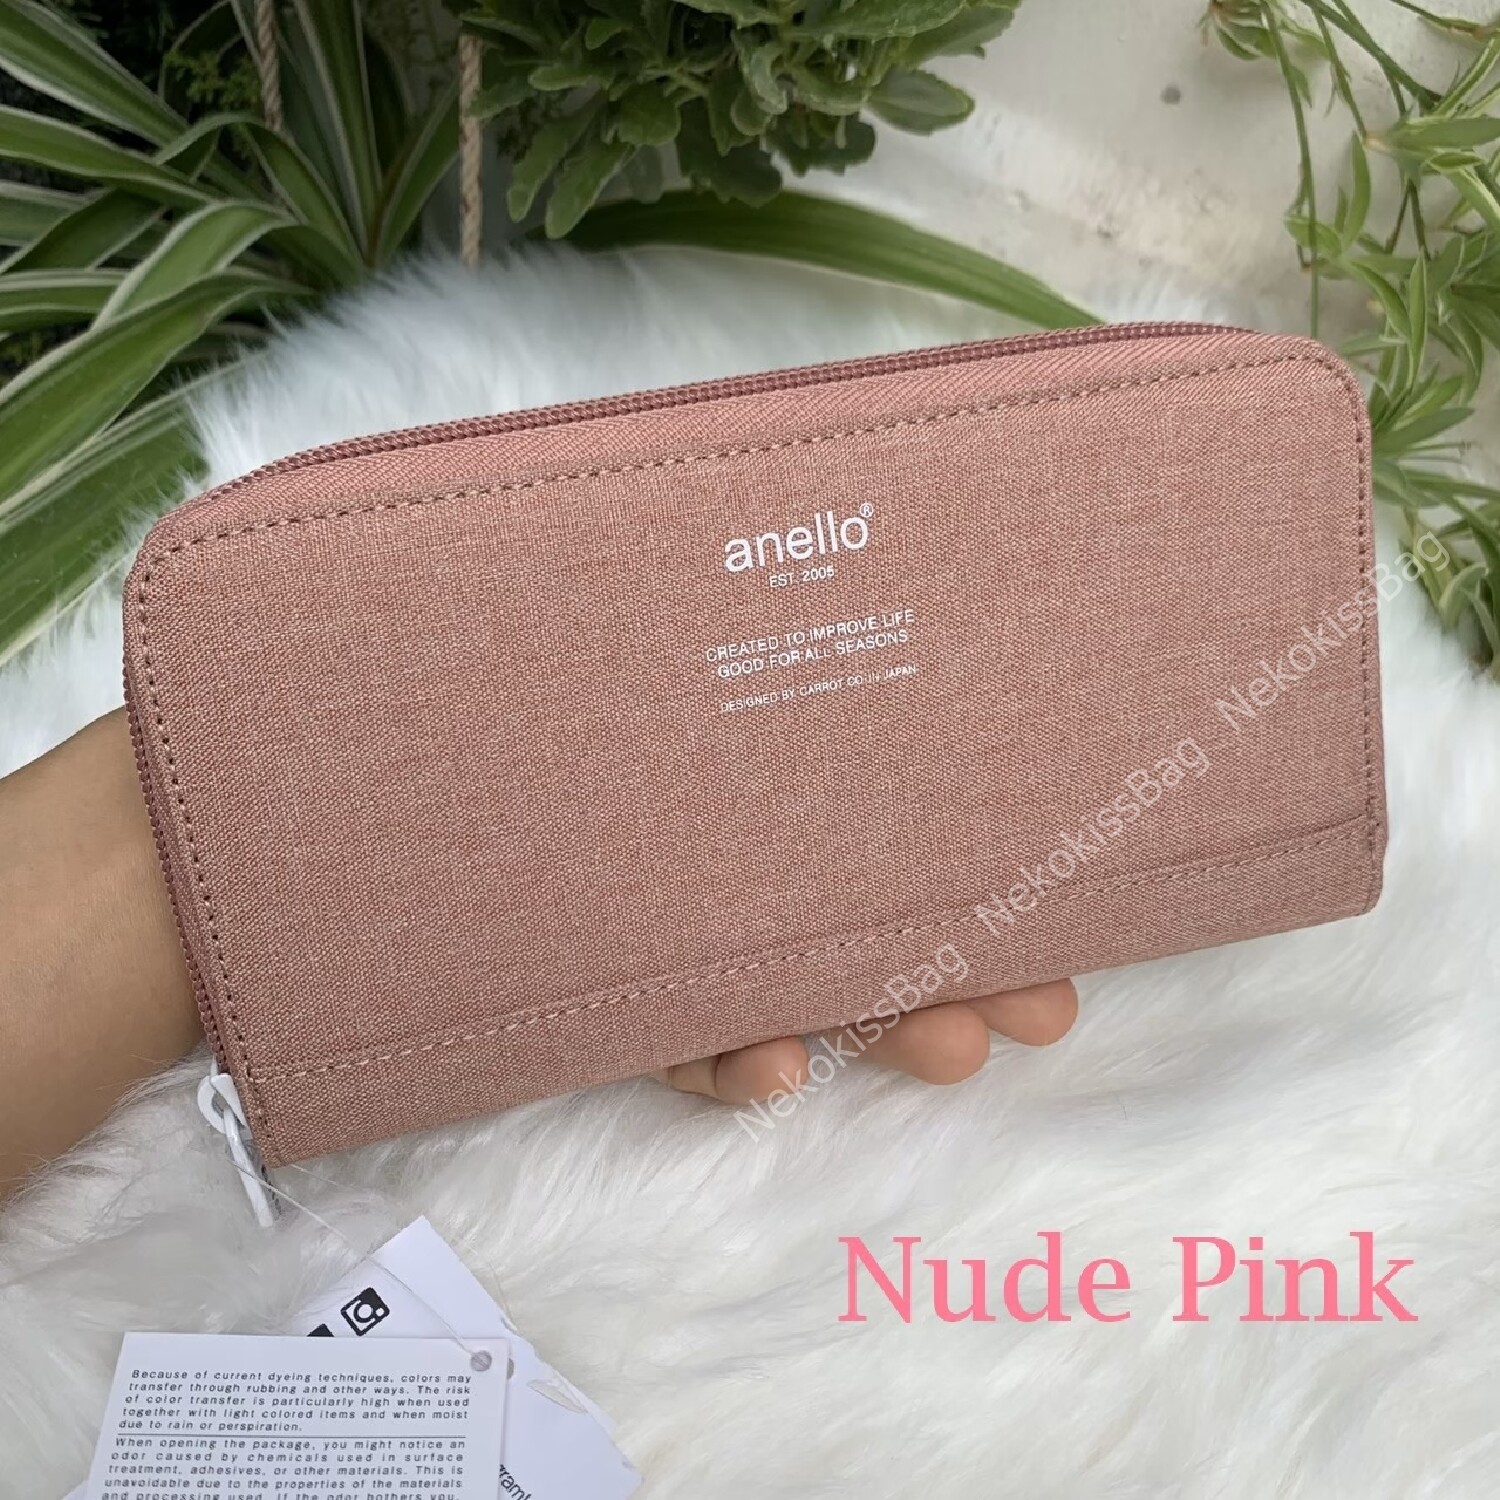 NekokissBag anello wallet ของแท้100% กระเป๋าสตางค์ ใบยาว กระเป๋าเงิน กระเป๋าตังค์ สี Natural pink ชมพูอ่อน สี Natural pink ชมพูอ่อน